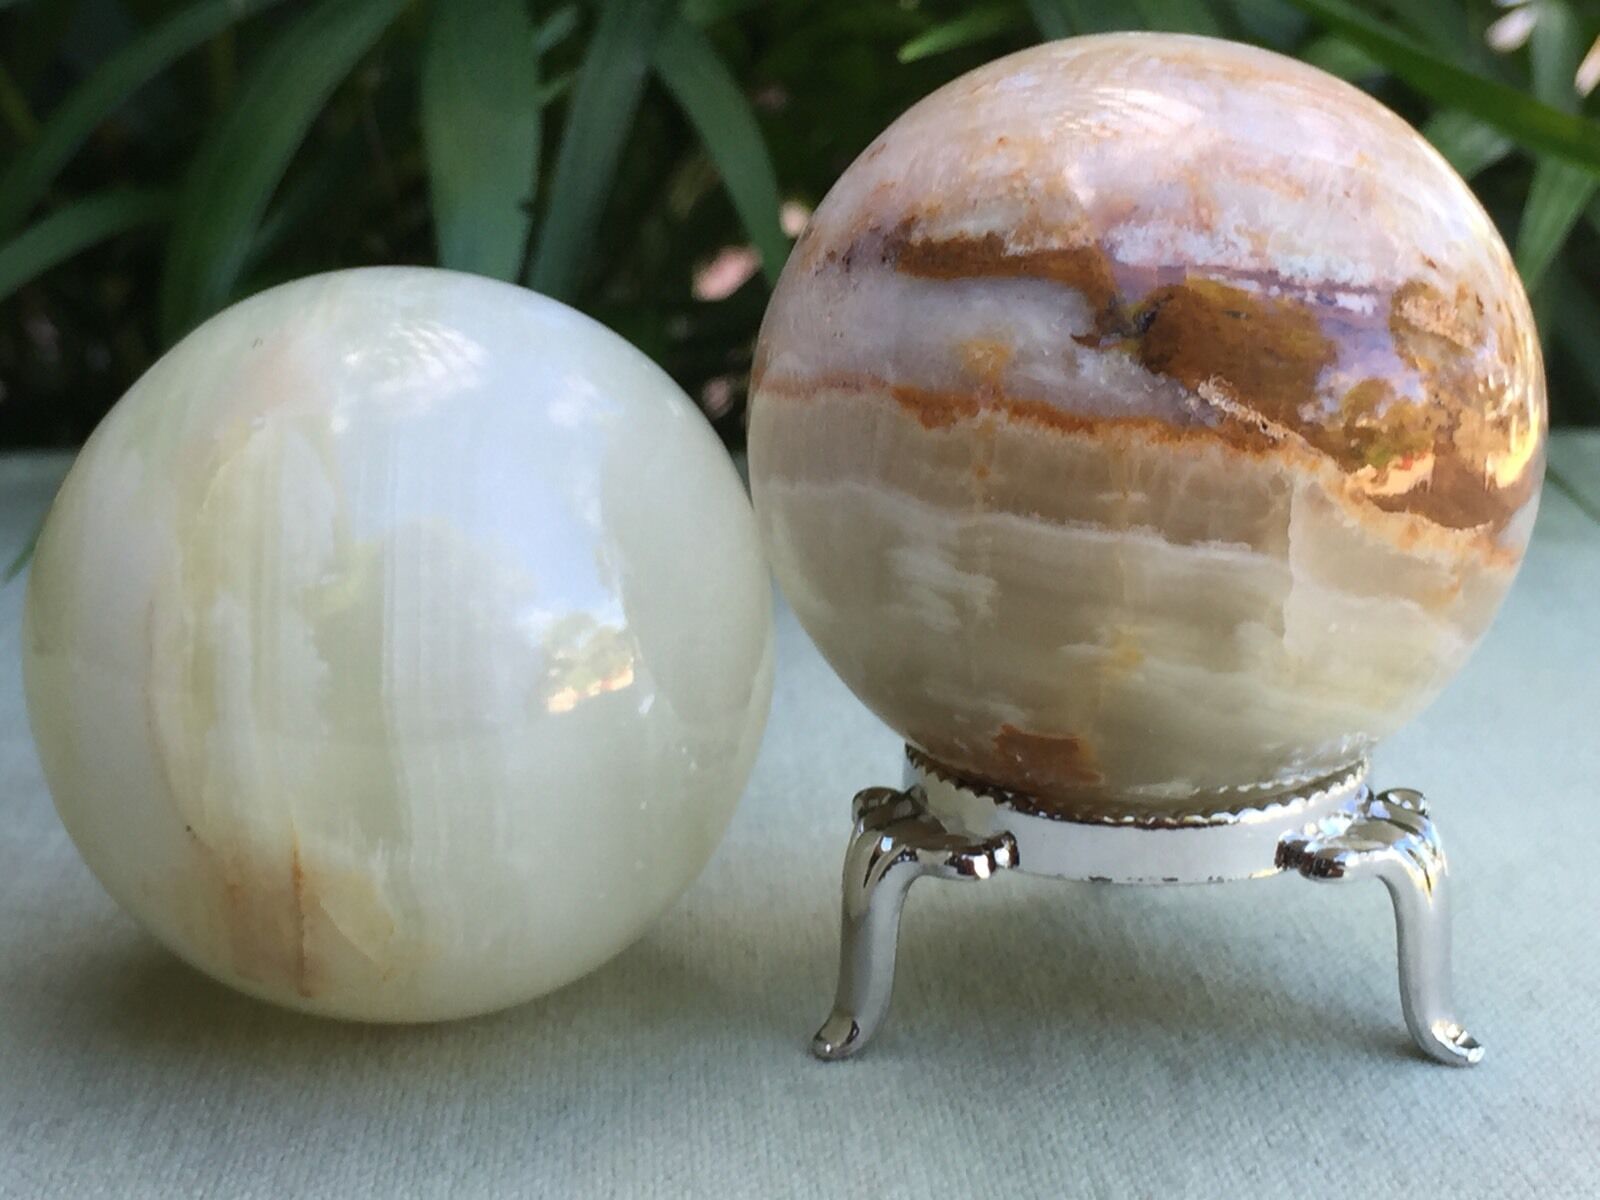 Onyx Sphere With Stand Polished Gemstone Specimen Reiki Healing Decor Pakistan.